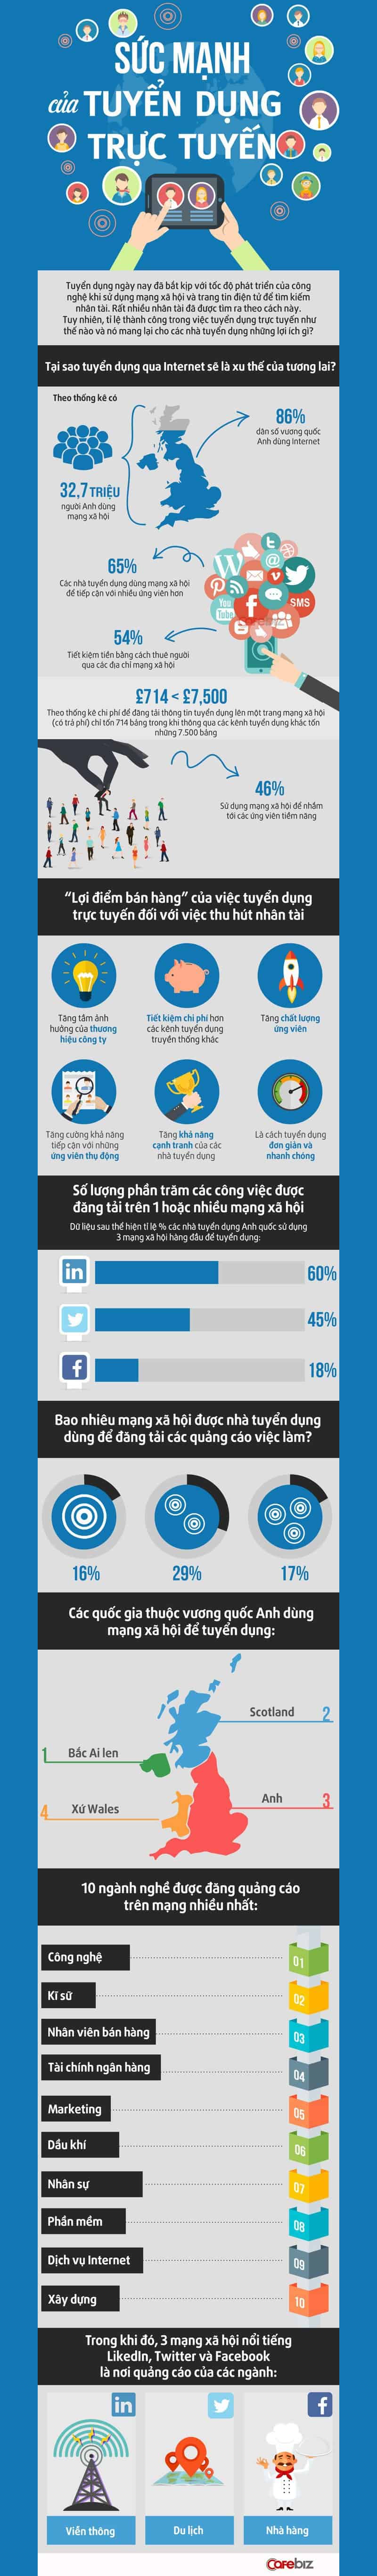 Infographic_Tuyen_Dung_Truc_Tuyen